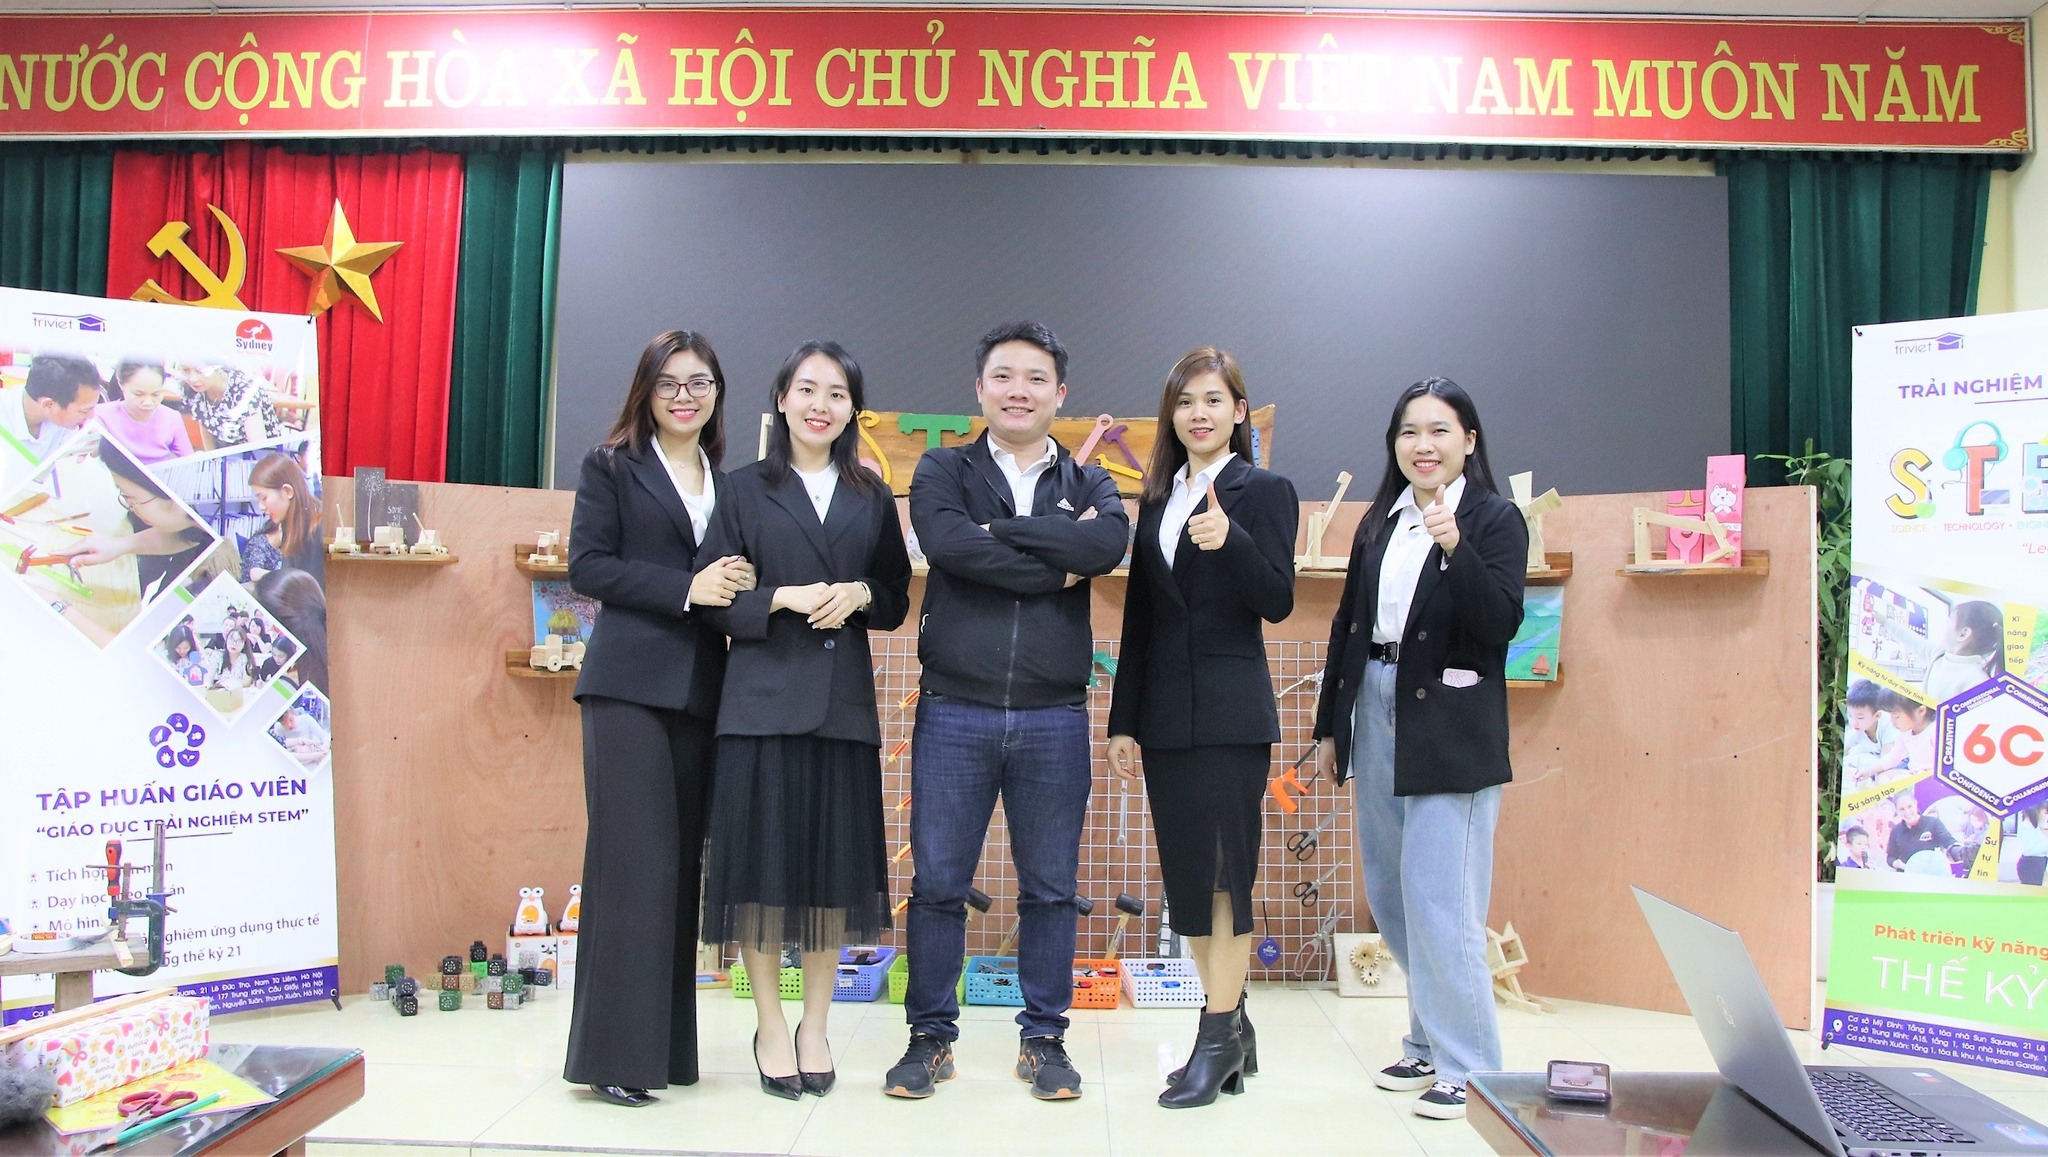 CHƯƠNG TRÌNH GIÁO DỤC TRẢI NGHIỆM STEM/ KỸ NĂNG SỐNG TRONG TRƯỜNG HỌC. | Trí Việt Group